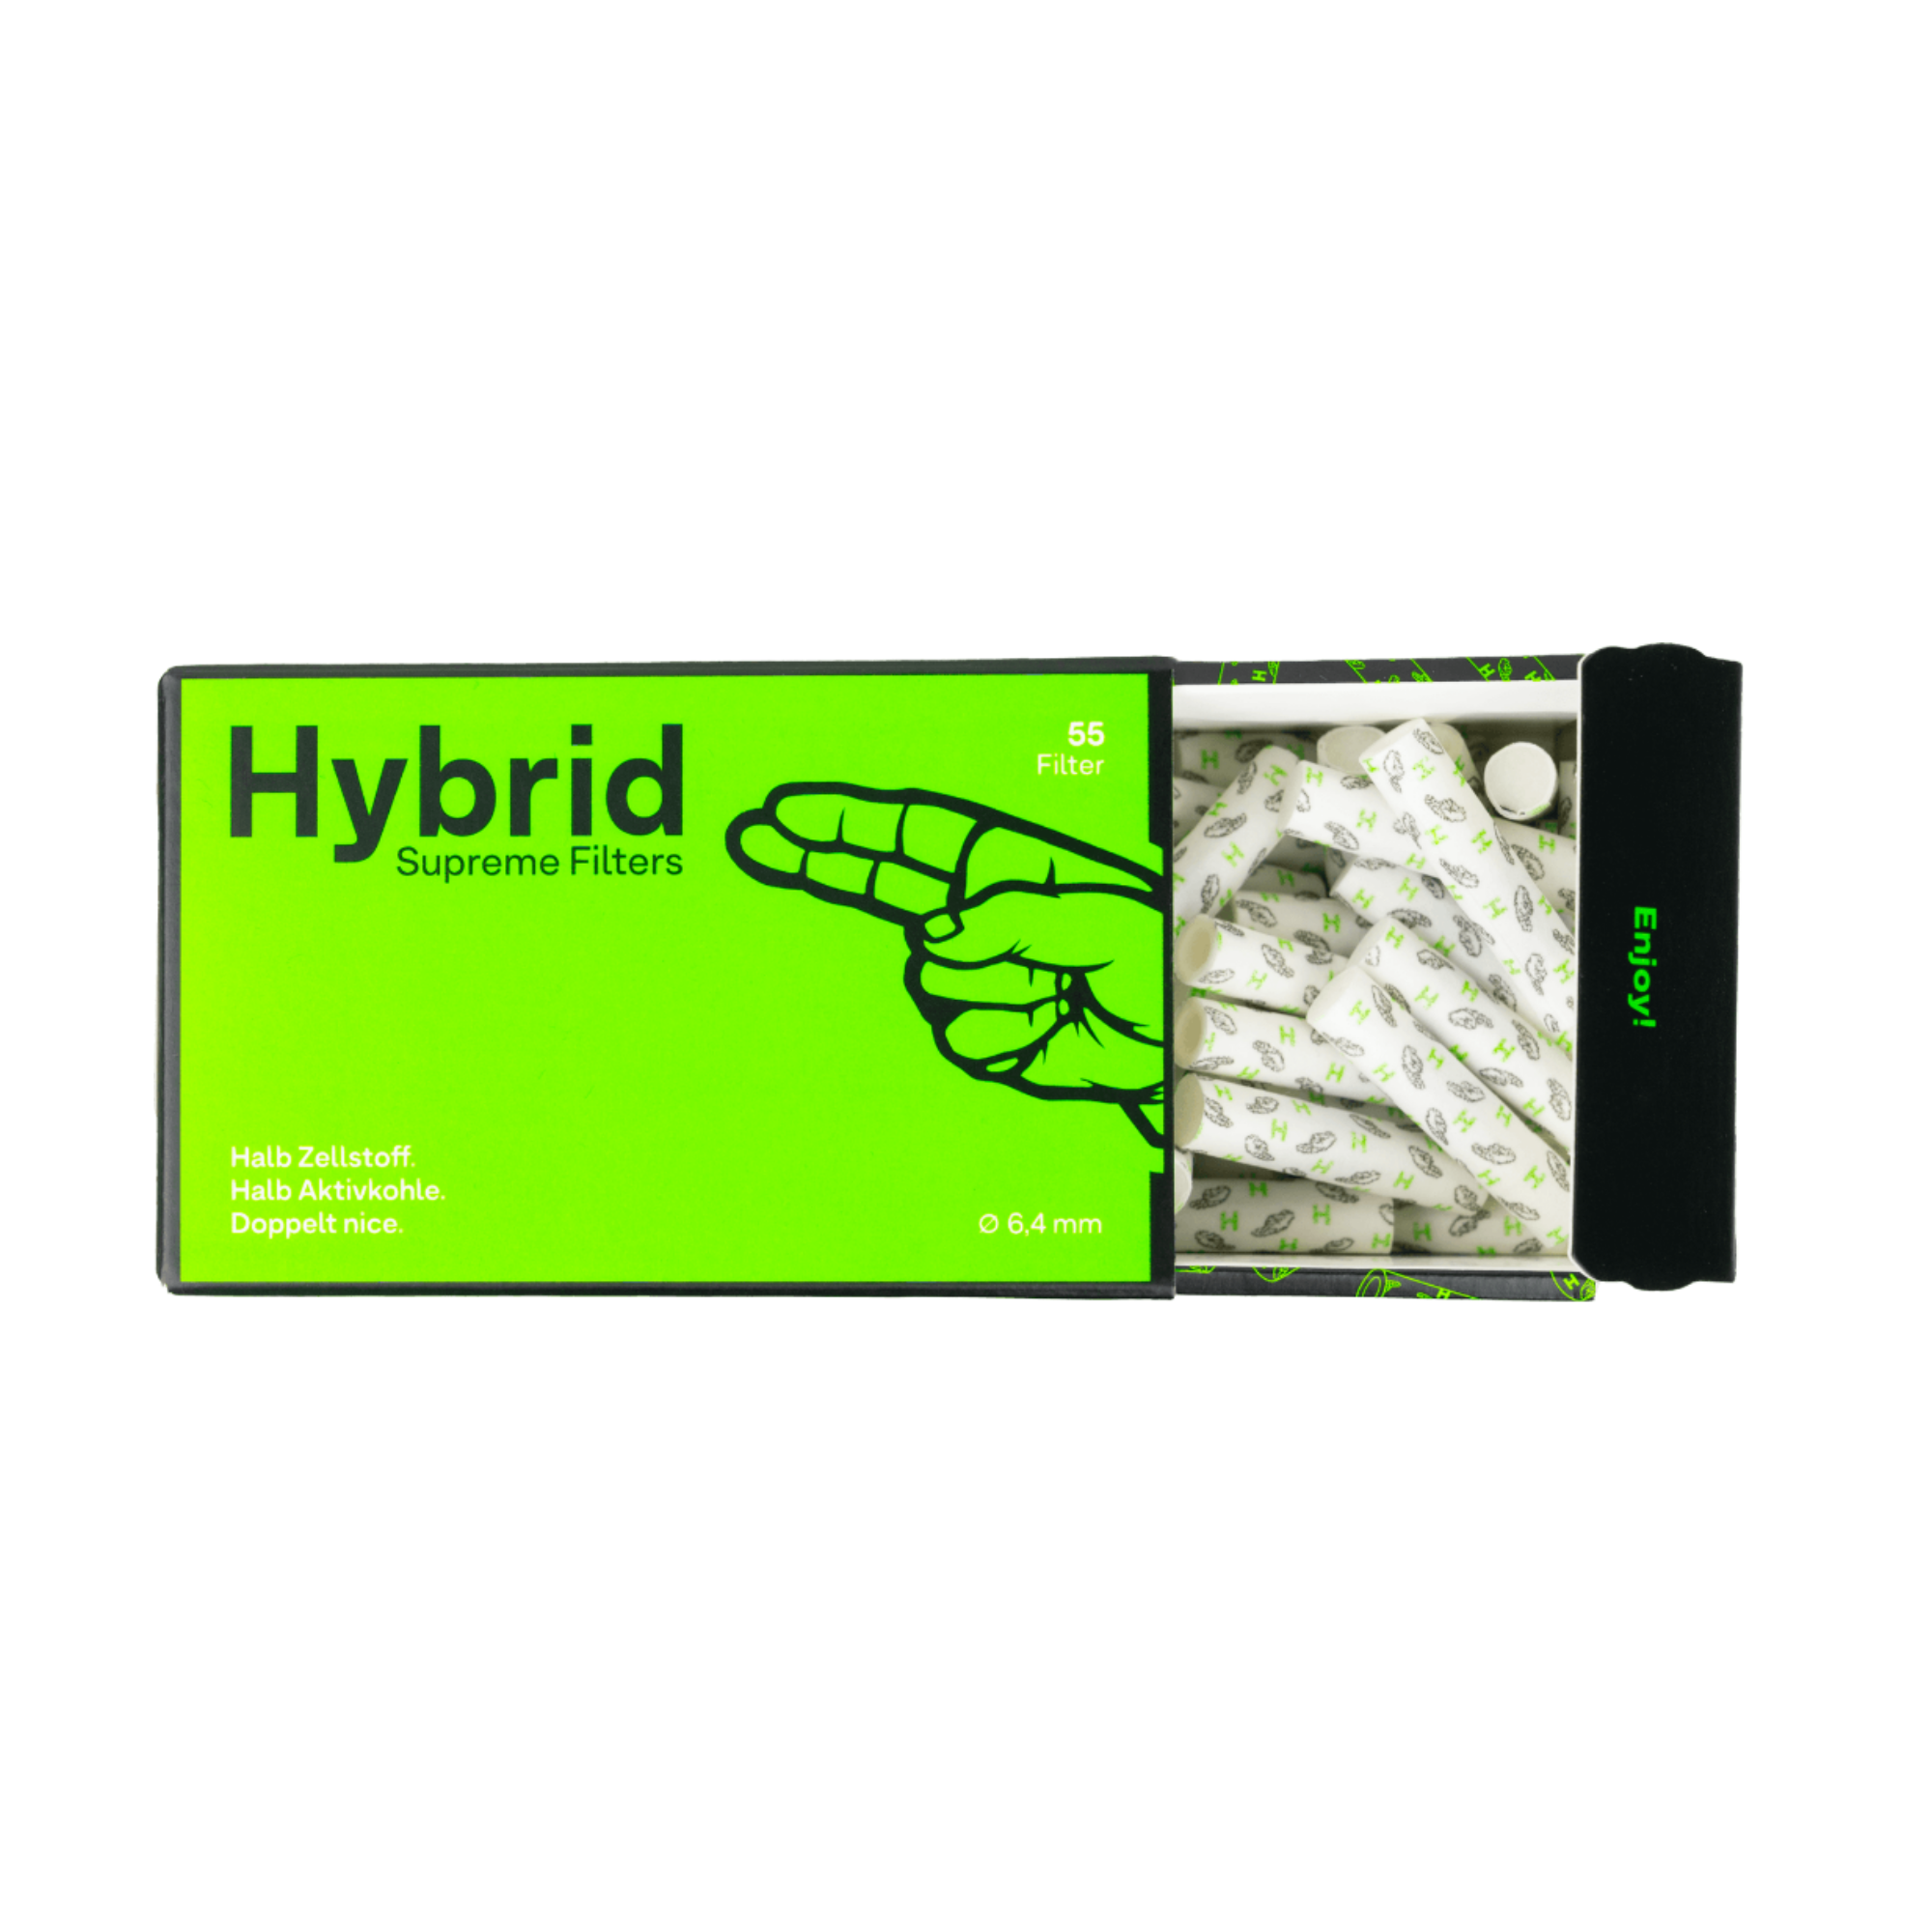 Hybrid Supreme 55er Filters